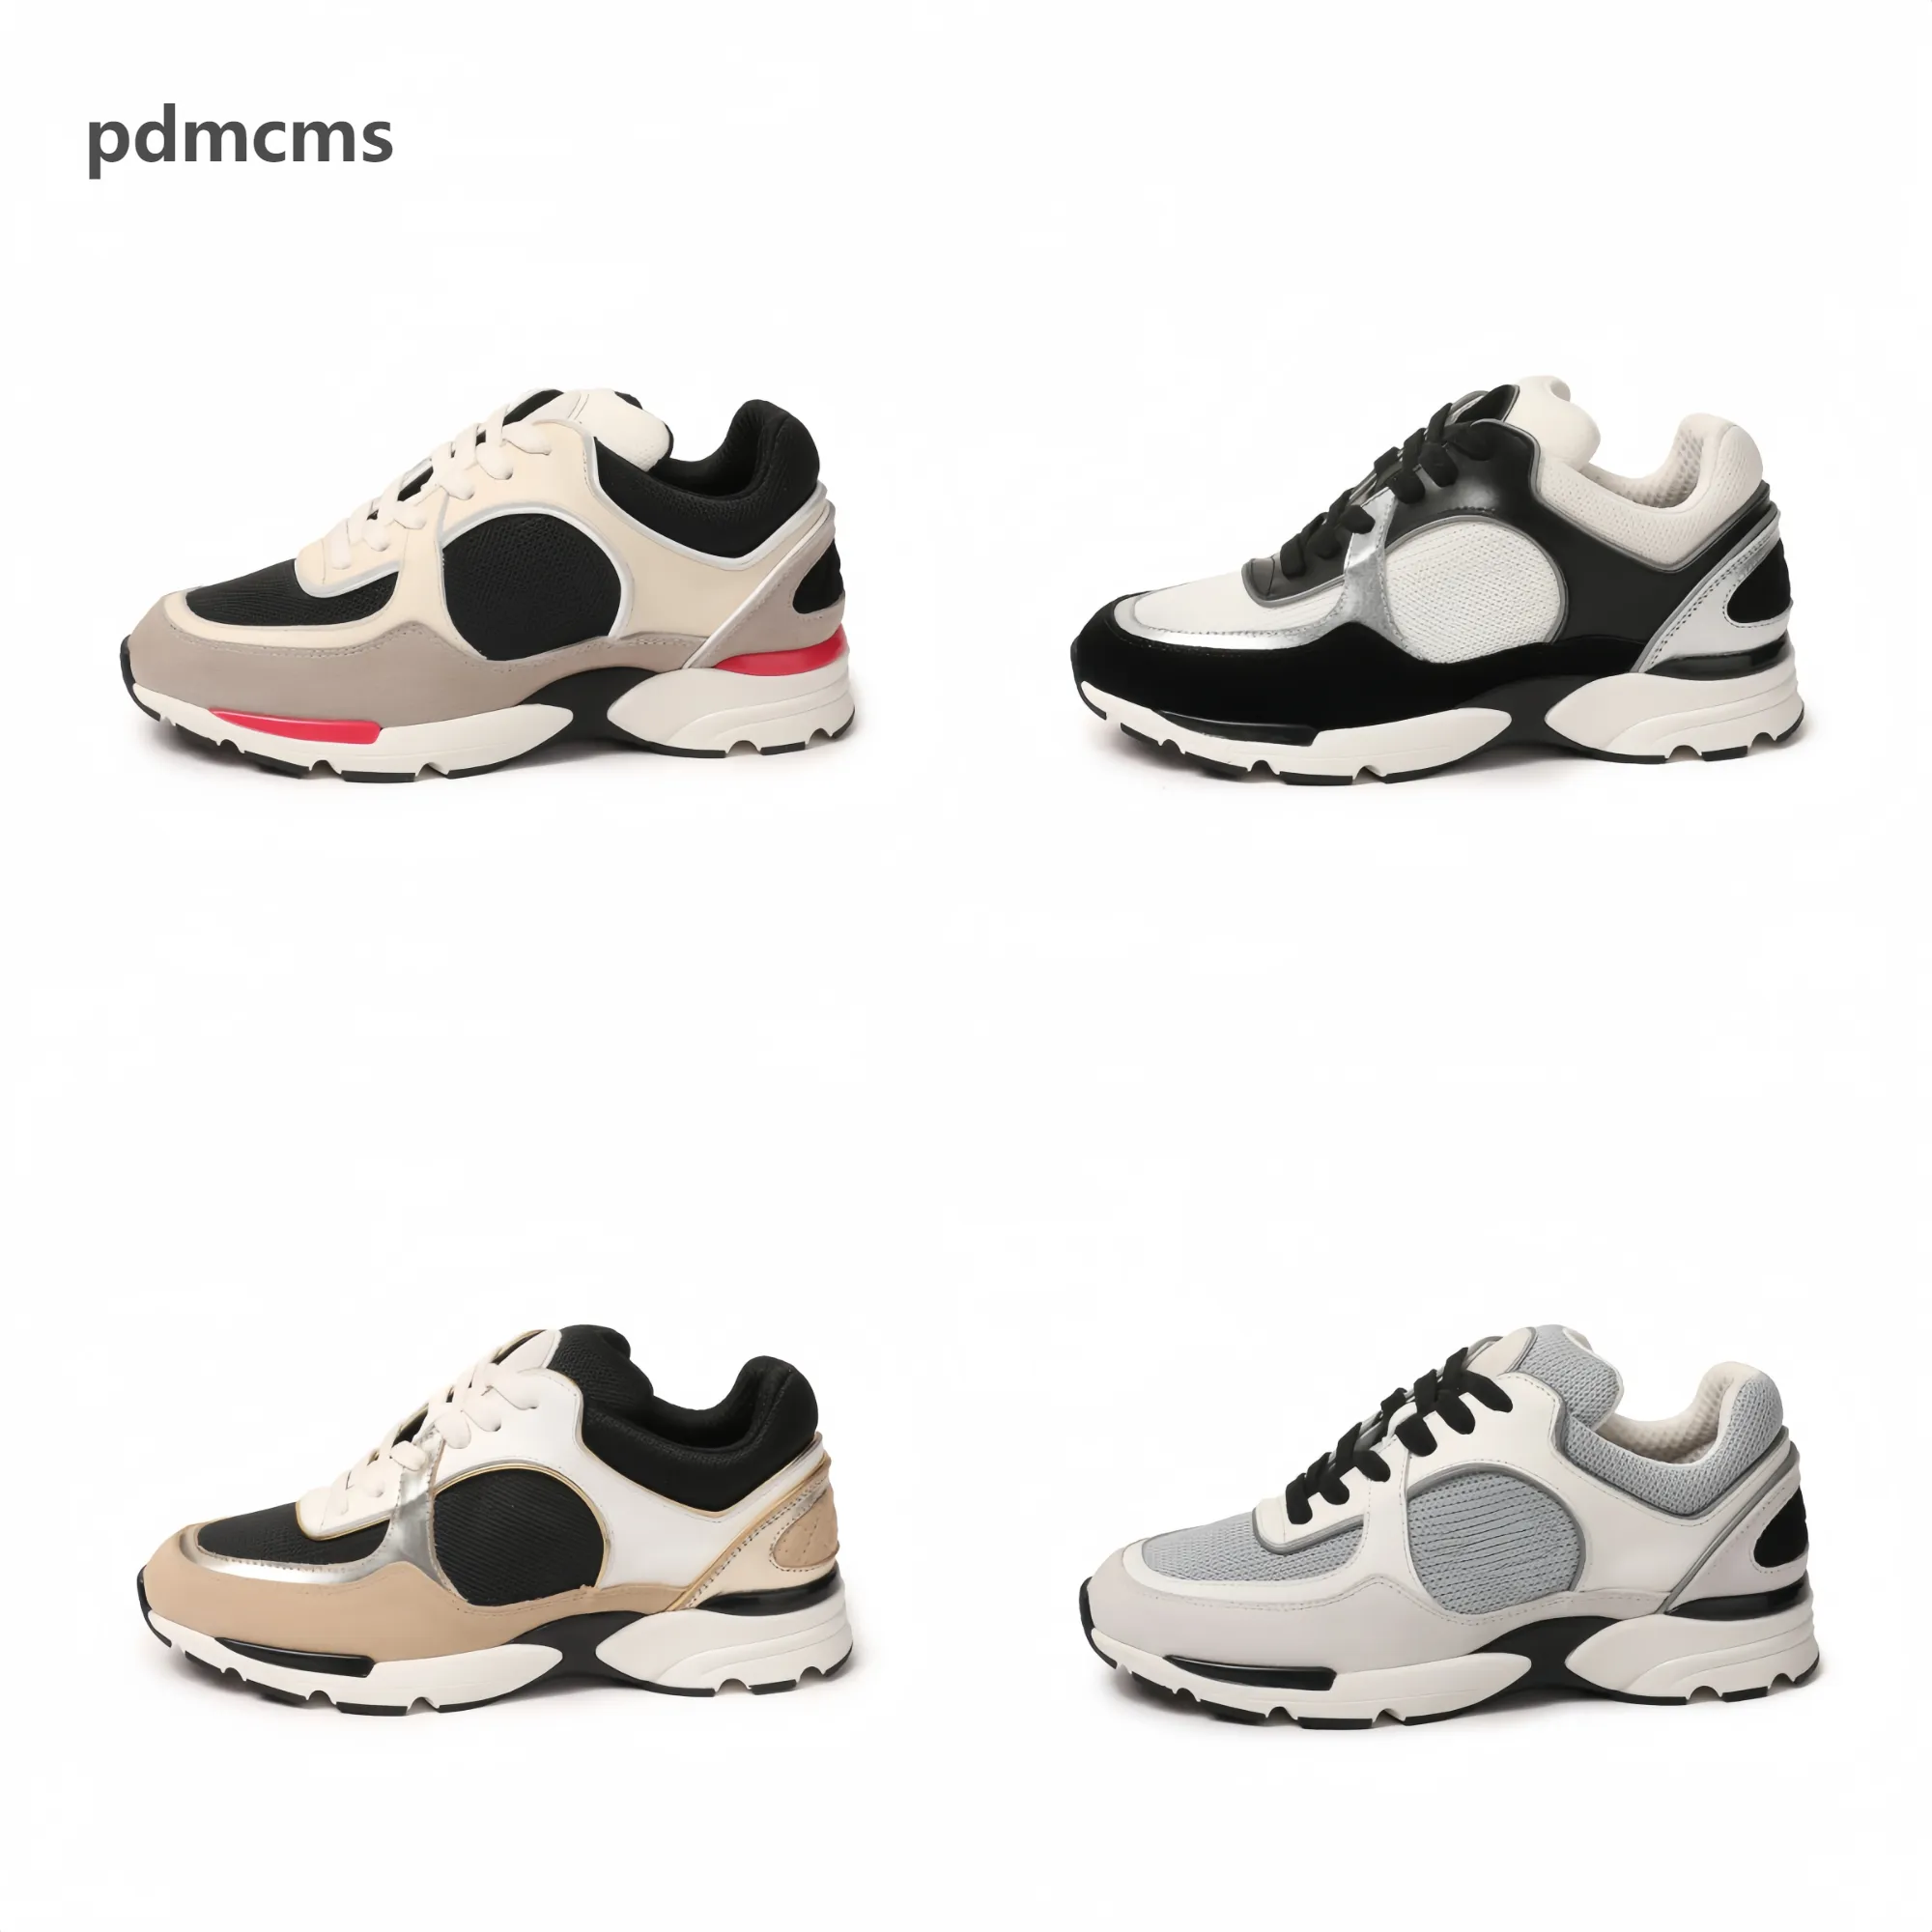 PDMCMS Wygodne i oddychające swobodne buty sportowe zaprojektowane dla mężczyzn i kobiet, pozwalając stóp cieszyć się wolnością i modą35-45